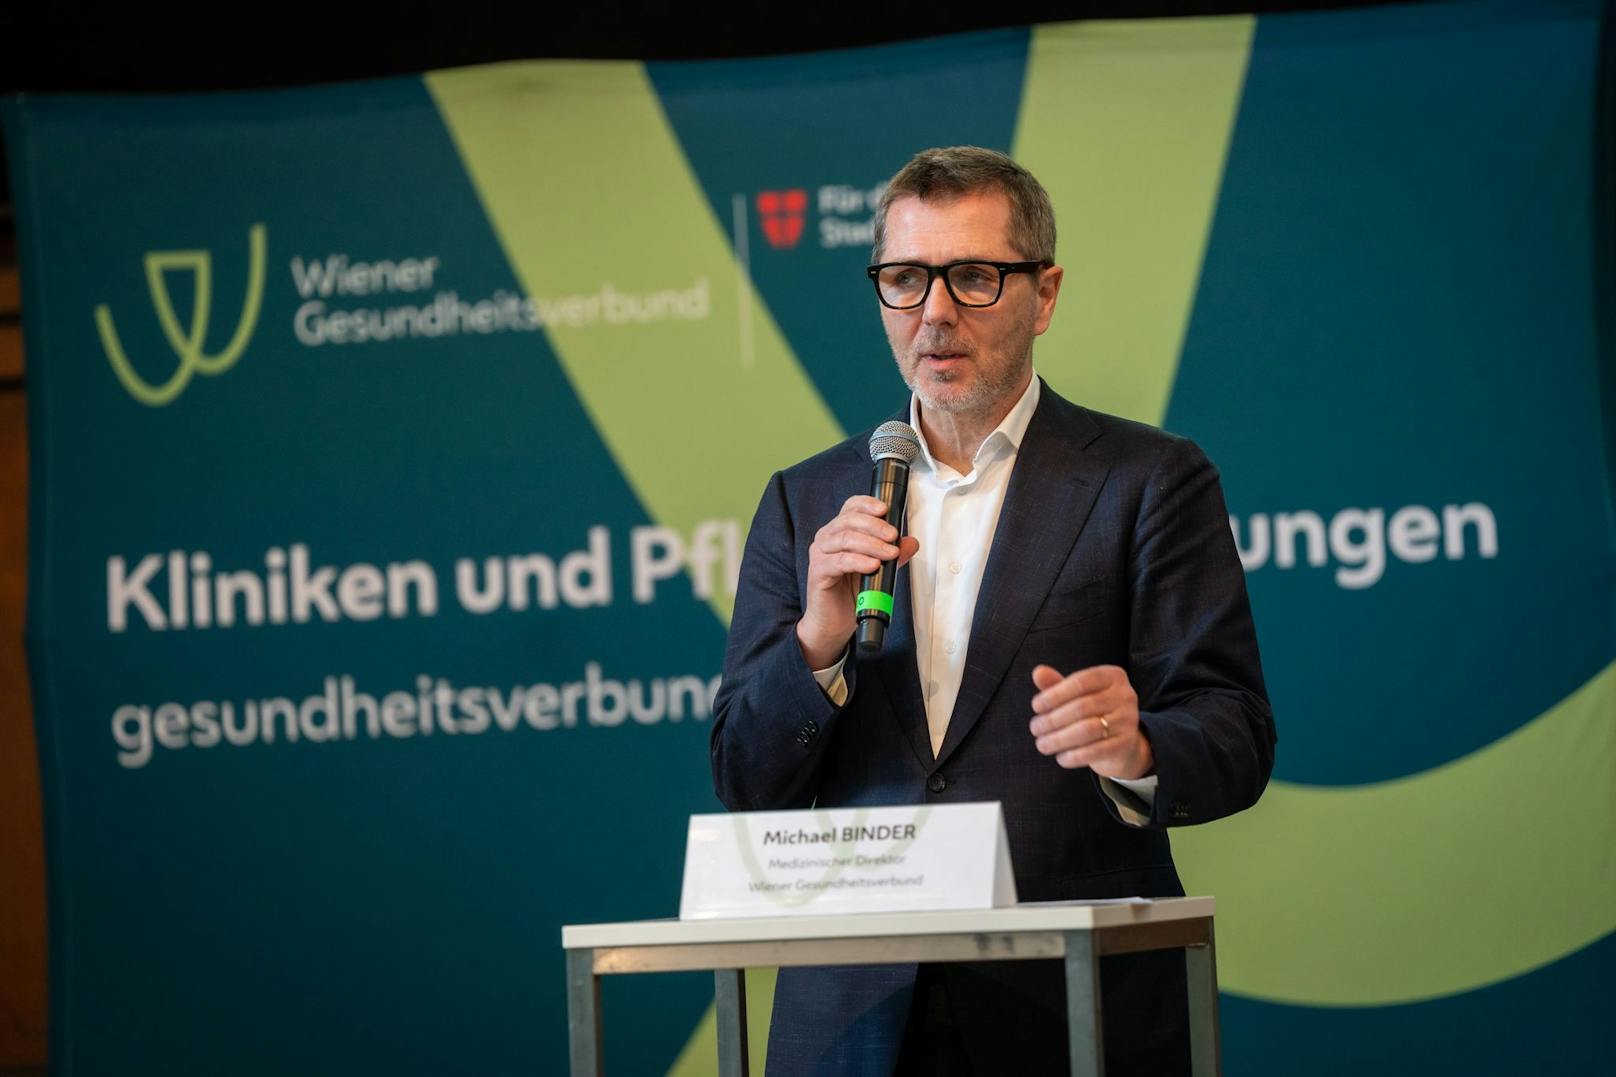 Michael Binder, Medizinischer Direktor des Wiener Gesundheitsverbundes